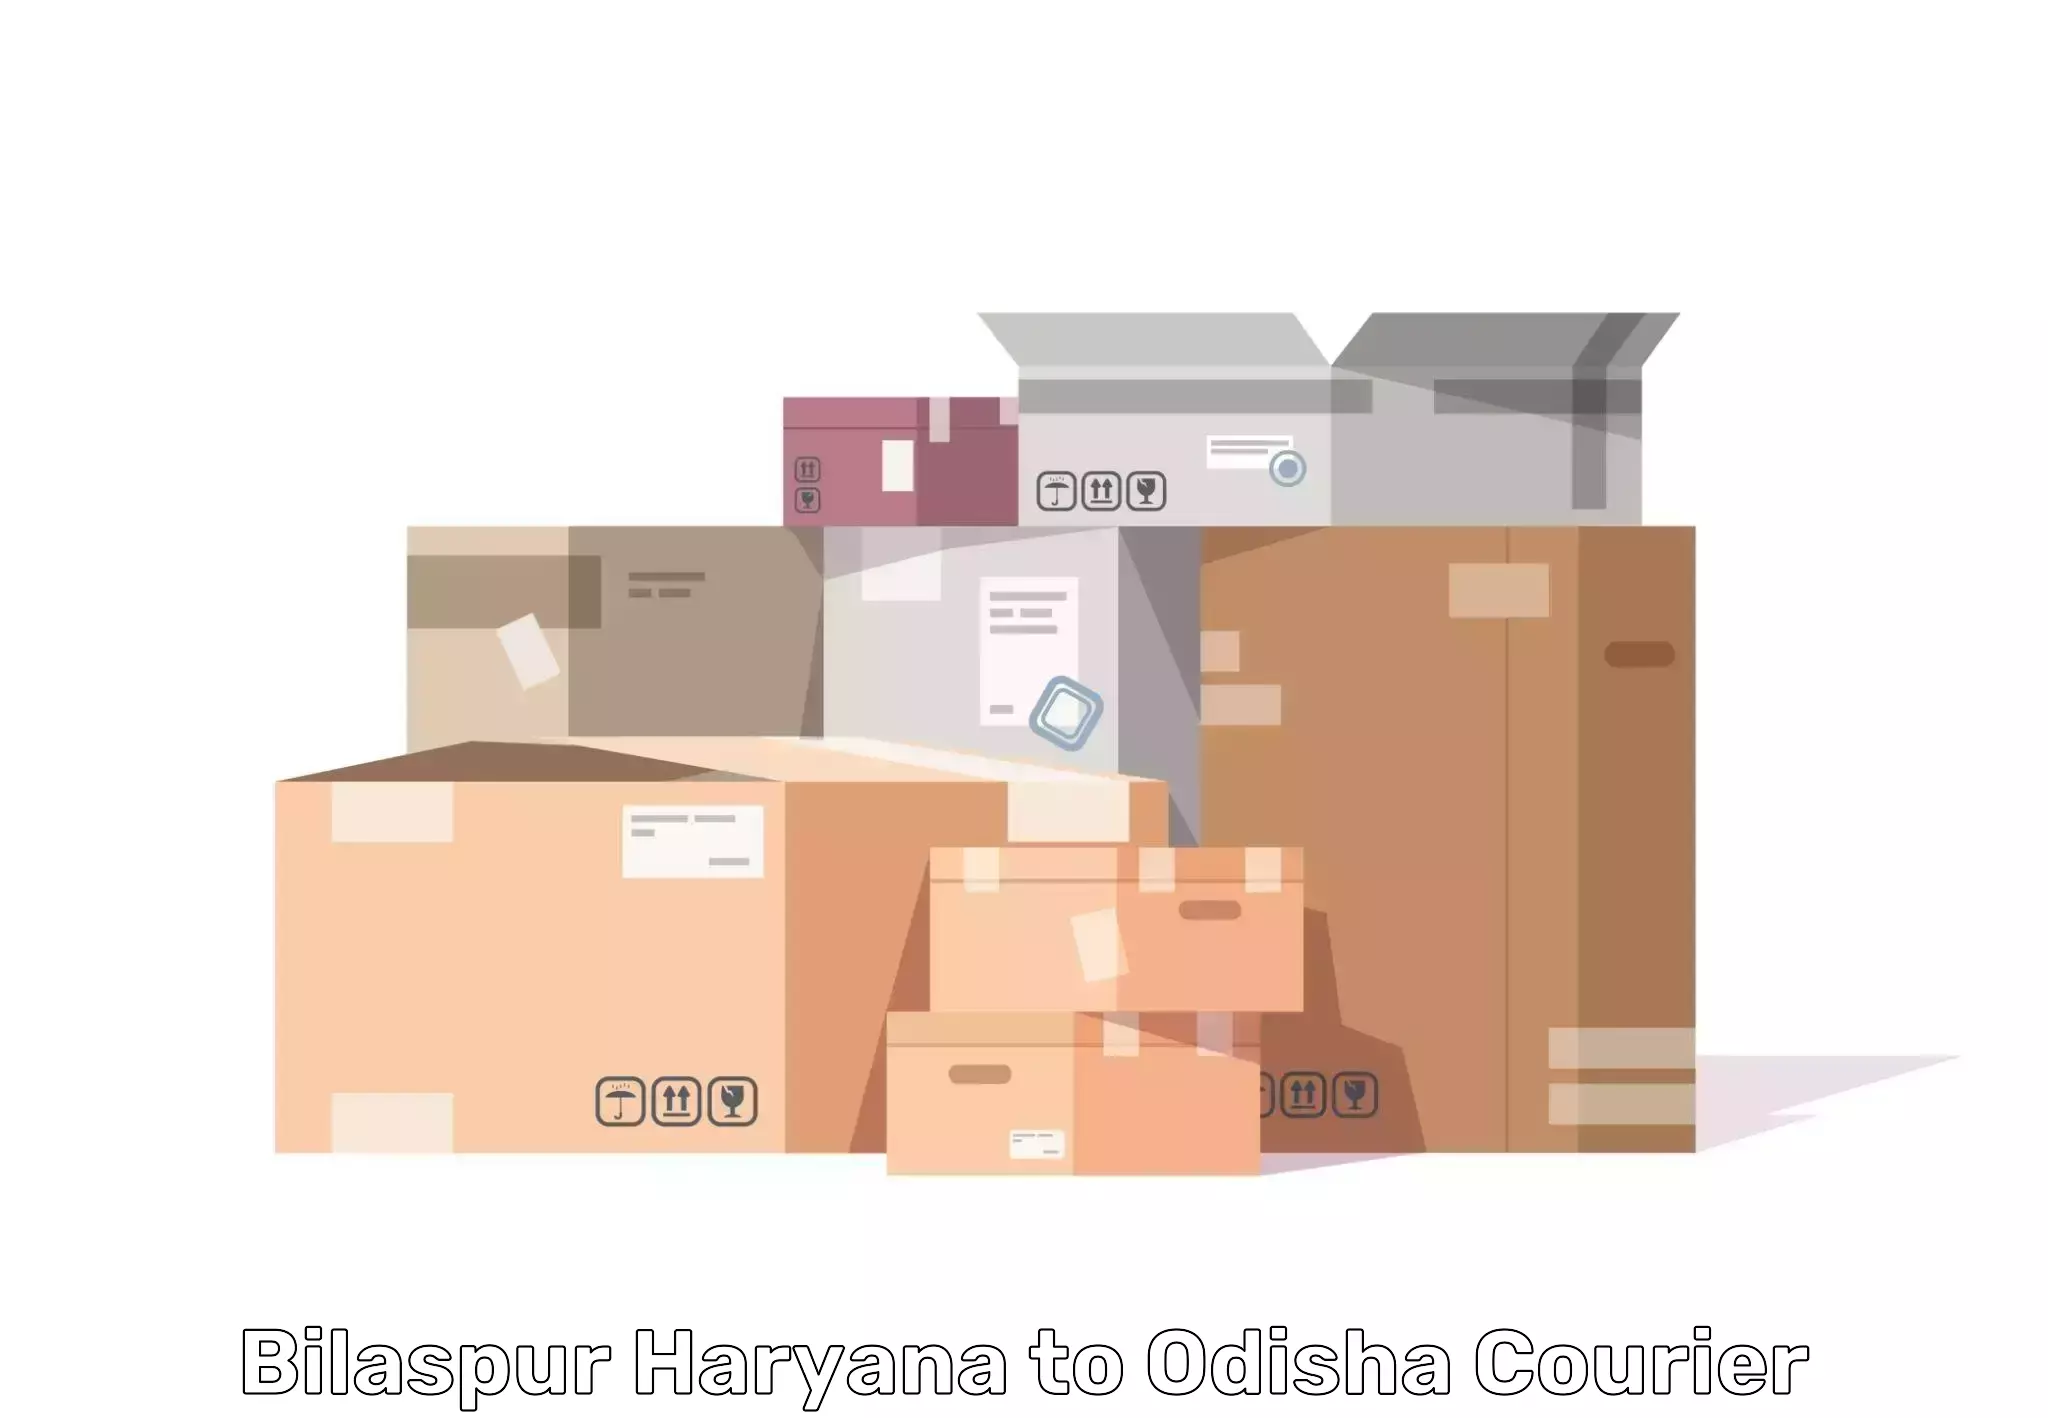 Furniture moving experts Bilaspur Haryana to Bhubaneswar